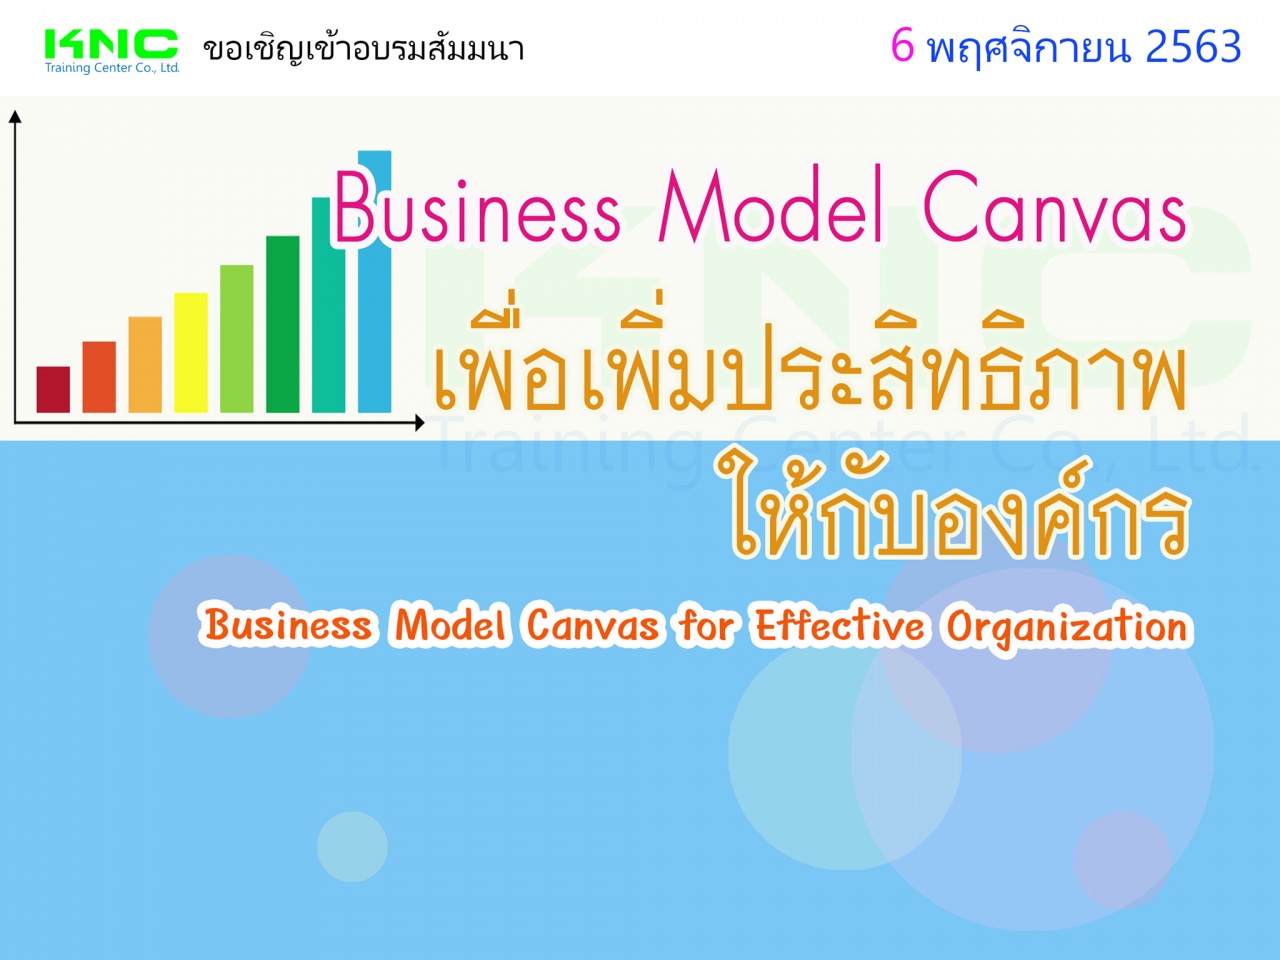 Business Model Canvas เพื่อเพิ่มประสิทธิภาพให้กับองค์กร